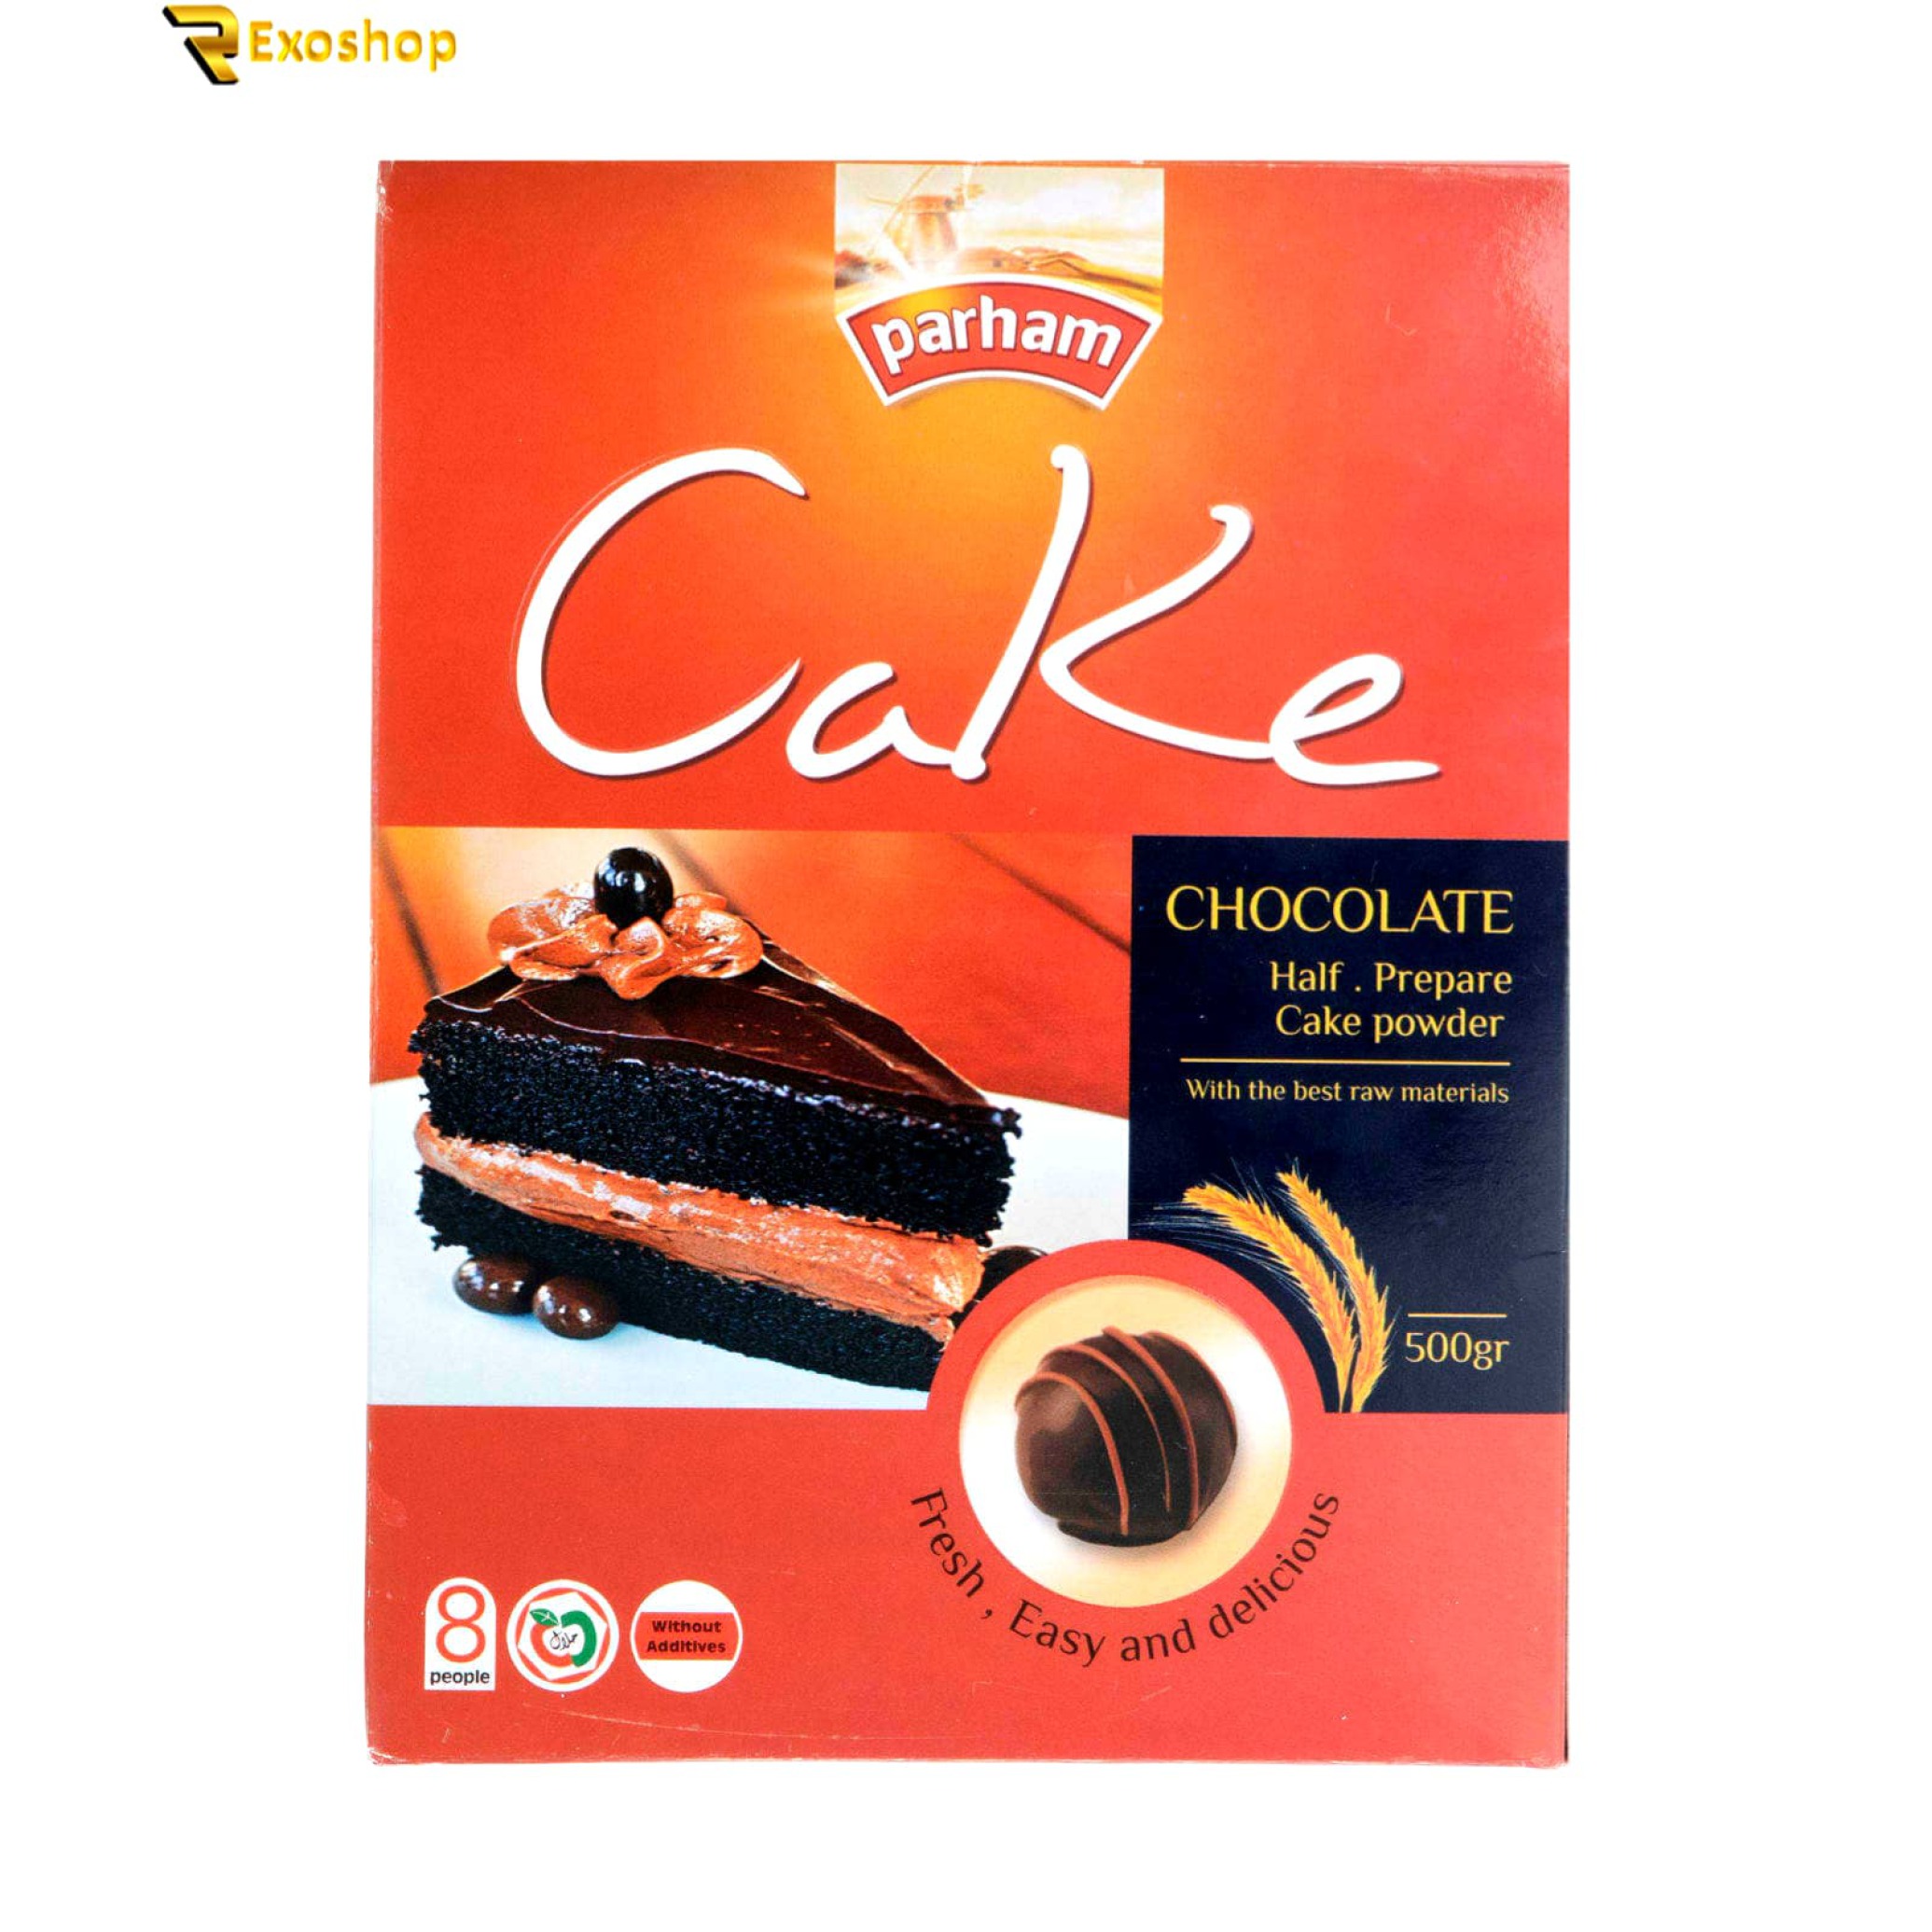  پودر کیک پرهام 500 گرمی کاکائویی یکی از بهترین پودر کیک ها است که با قیمتی ارزان و بهترین کیفیت در رکسوشاپ موجود است 